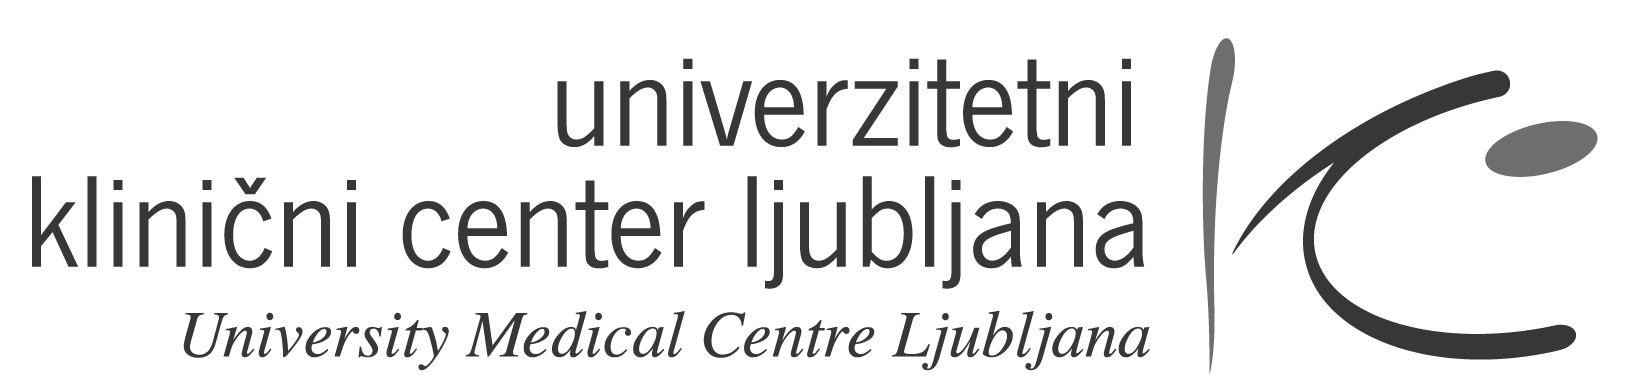 logo_ukcl